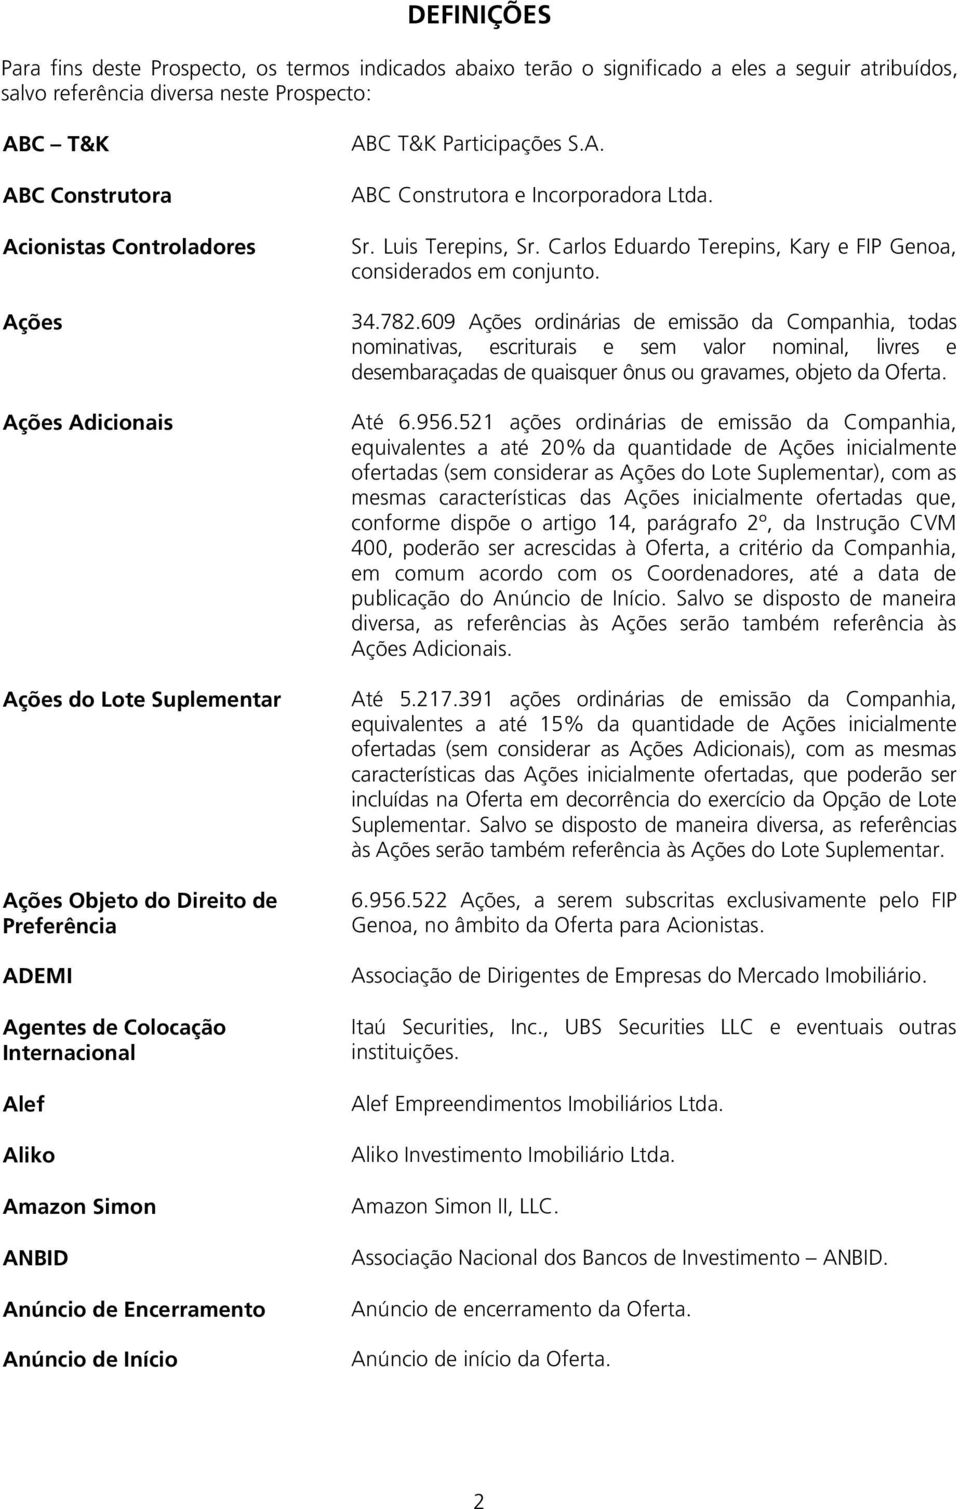 Anúncio de Início ABC T&K Participações S.A. ABC Construtora e Incorporadora Ltda. Sr. Luis Terepins, Sr. Carlos Eduardo Terepins, Kary e FIP Genoa, considerados em conjunto. 34.782.